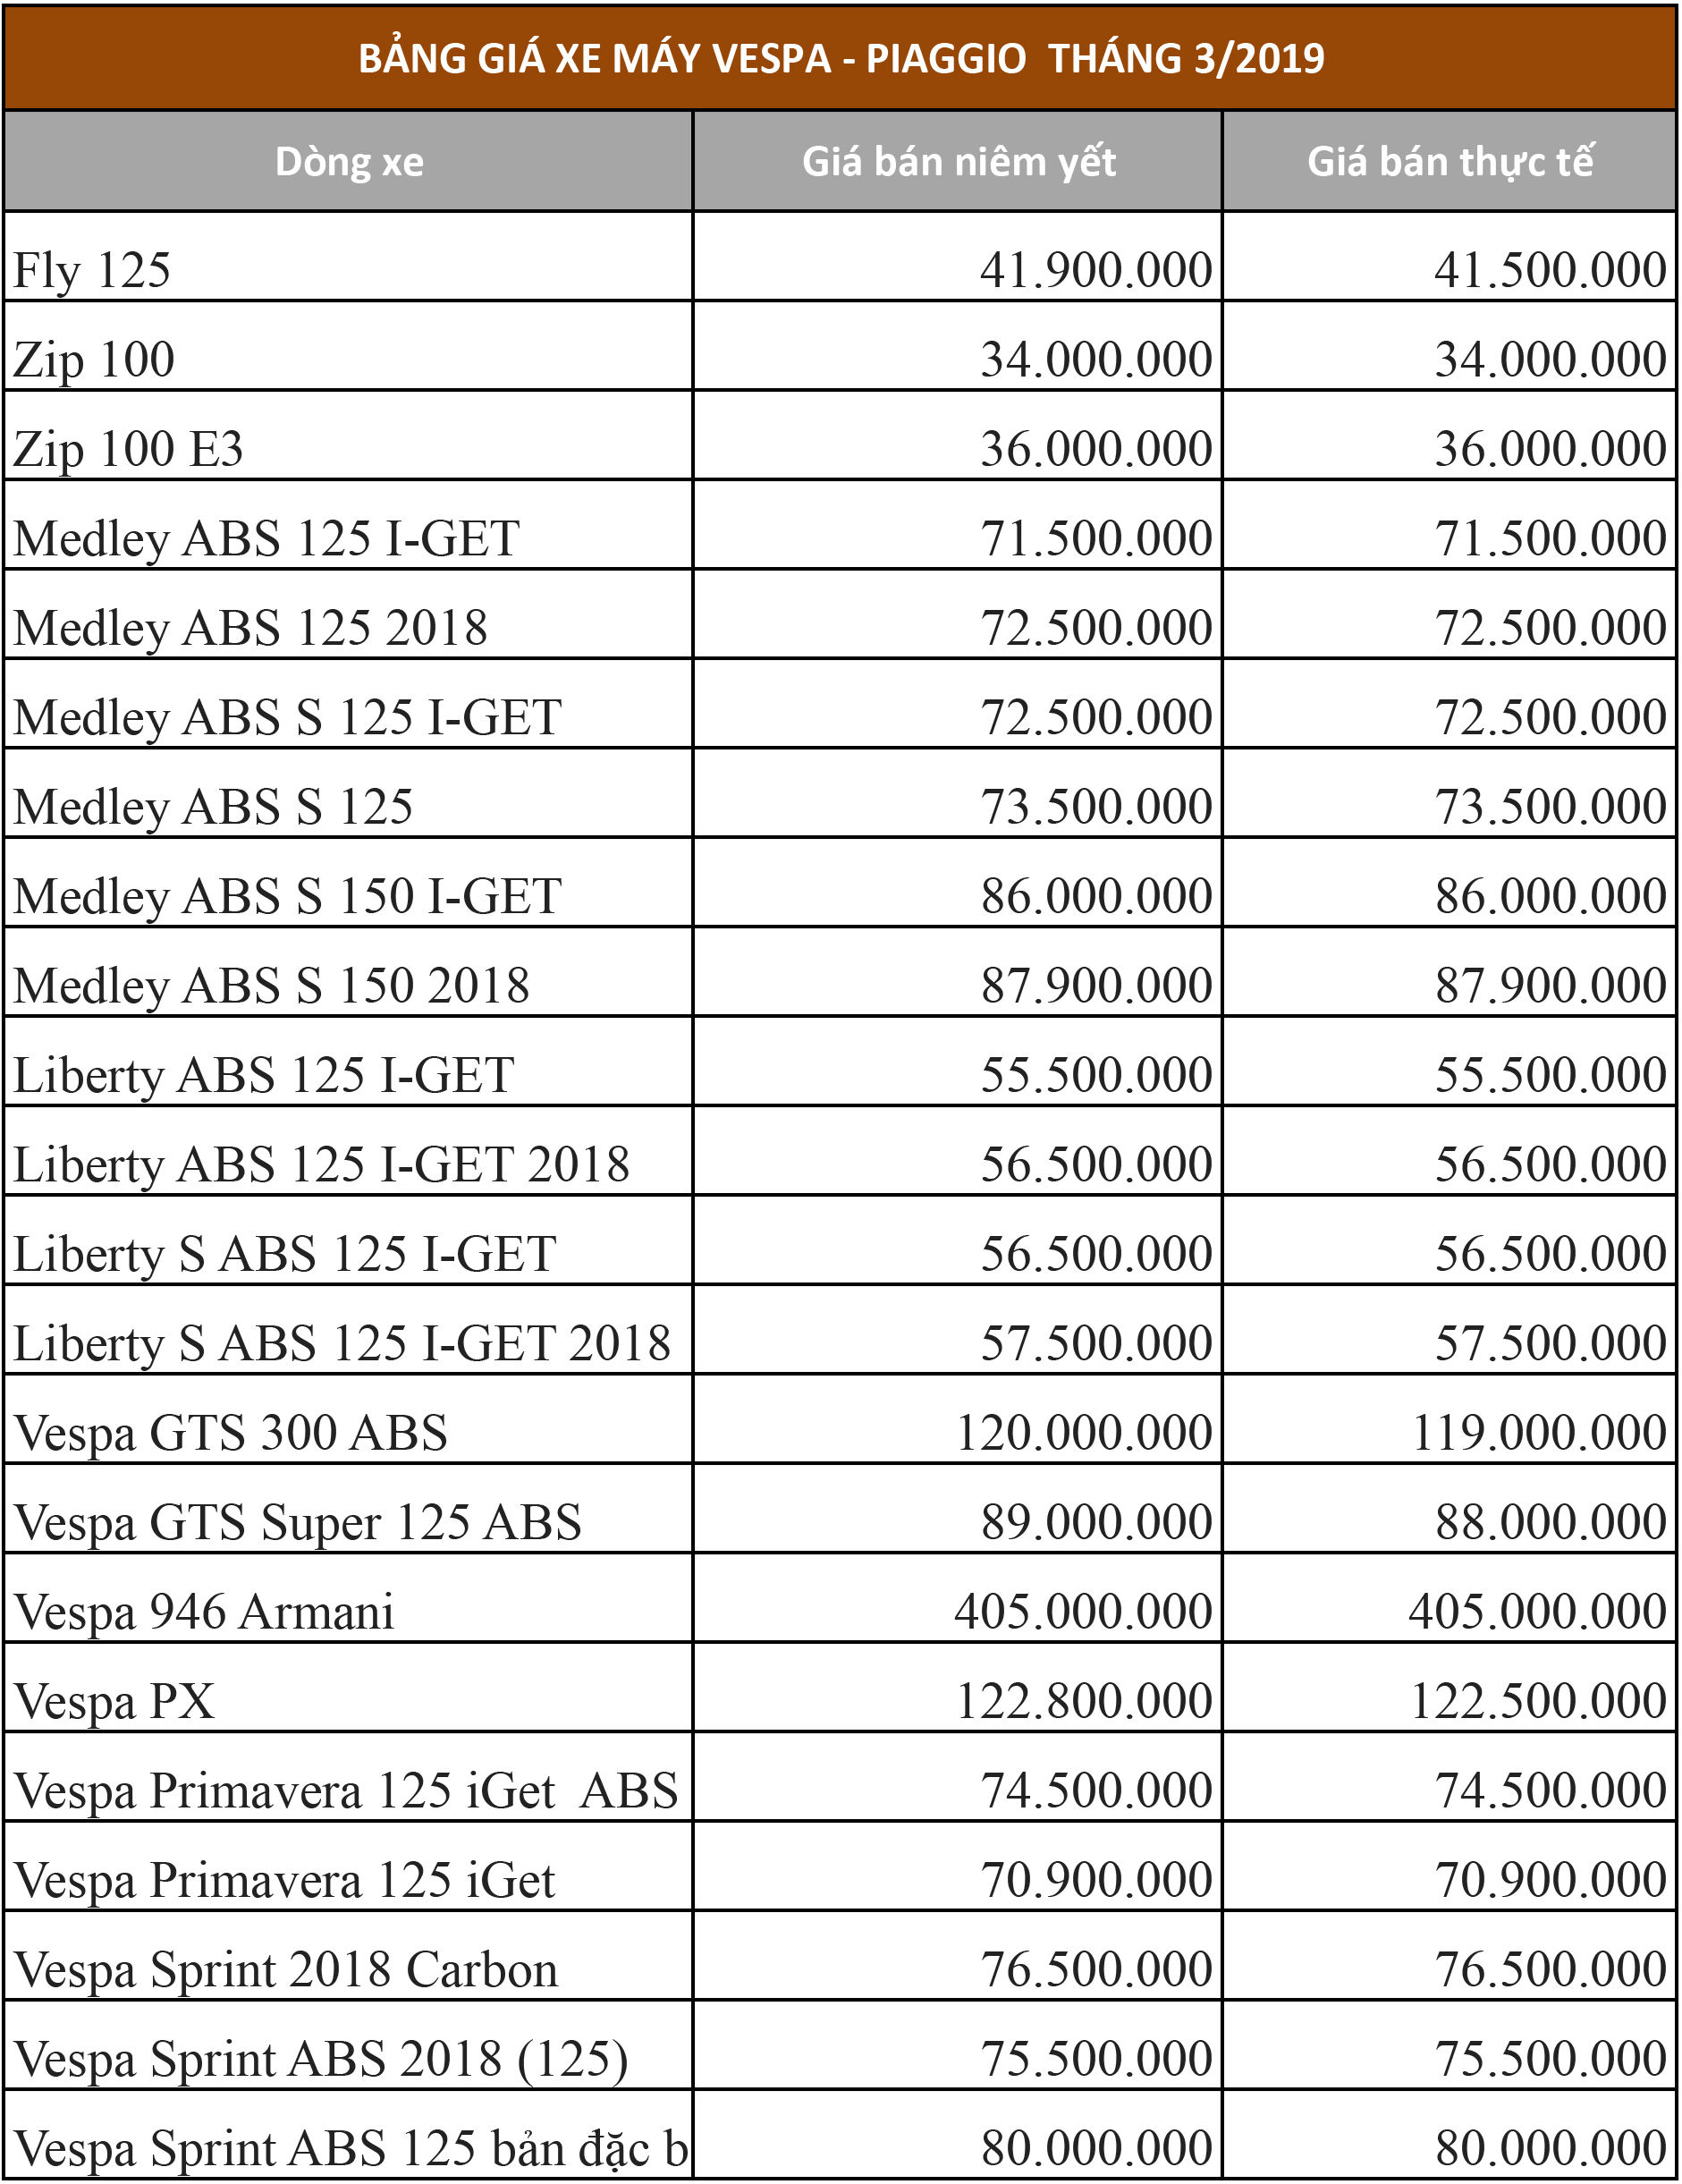 Bảng giá xe máy Vespa - Piaggio tháng 3/2019 tại Việt Nam.